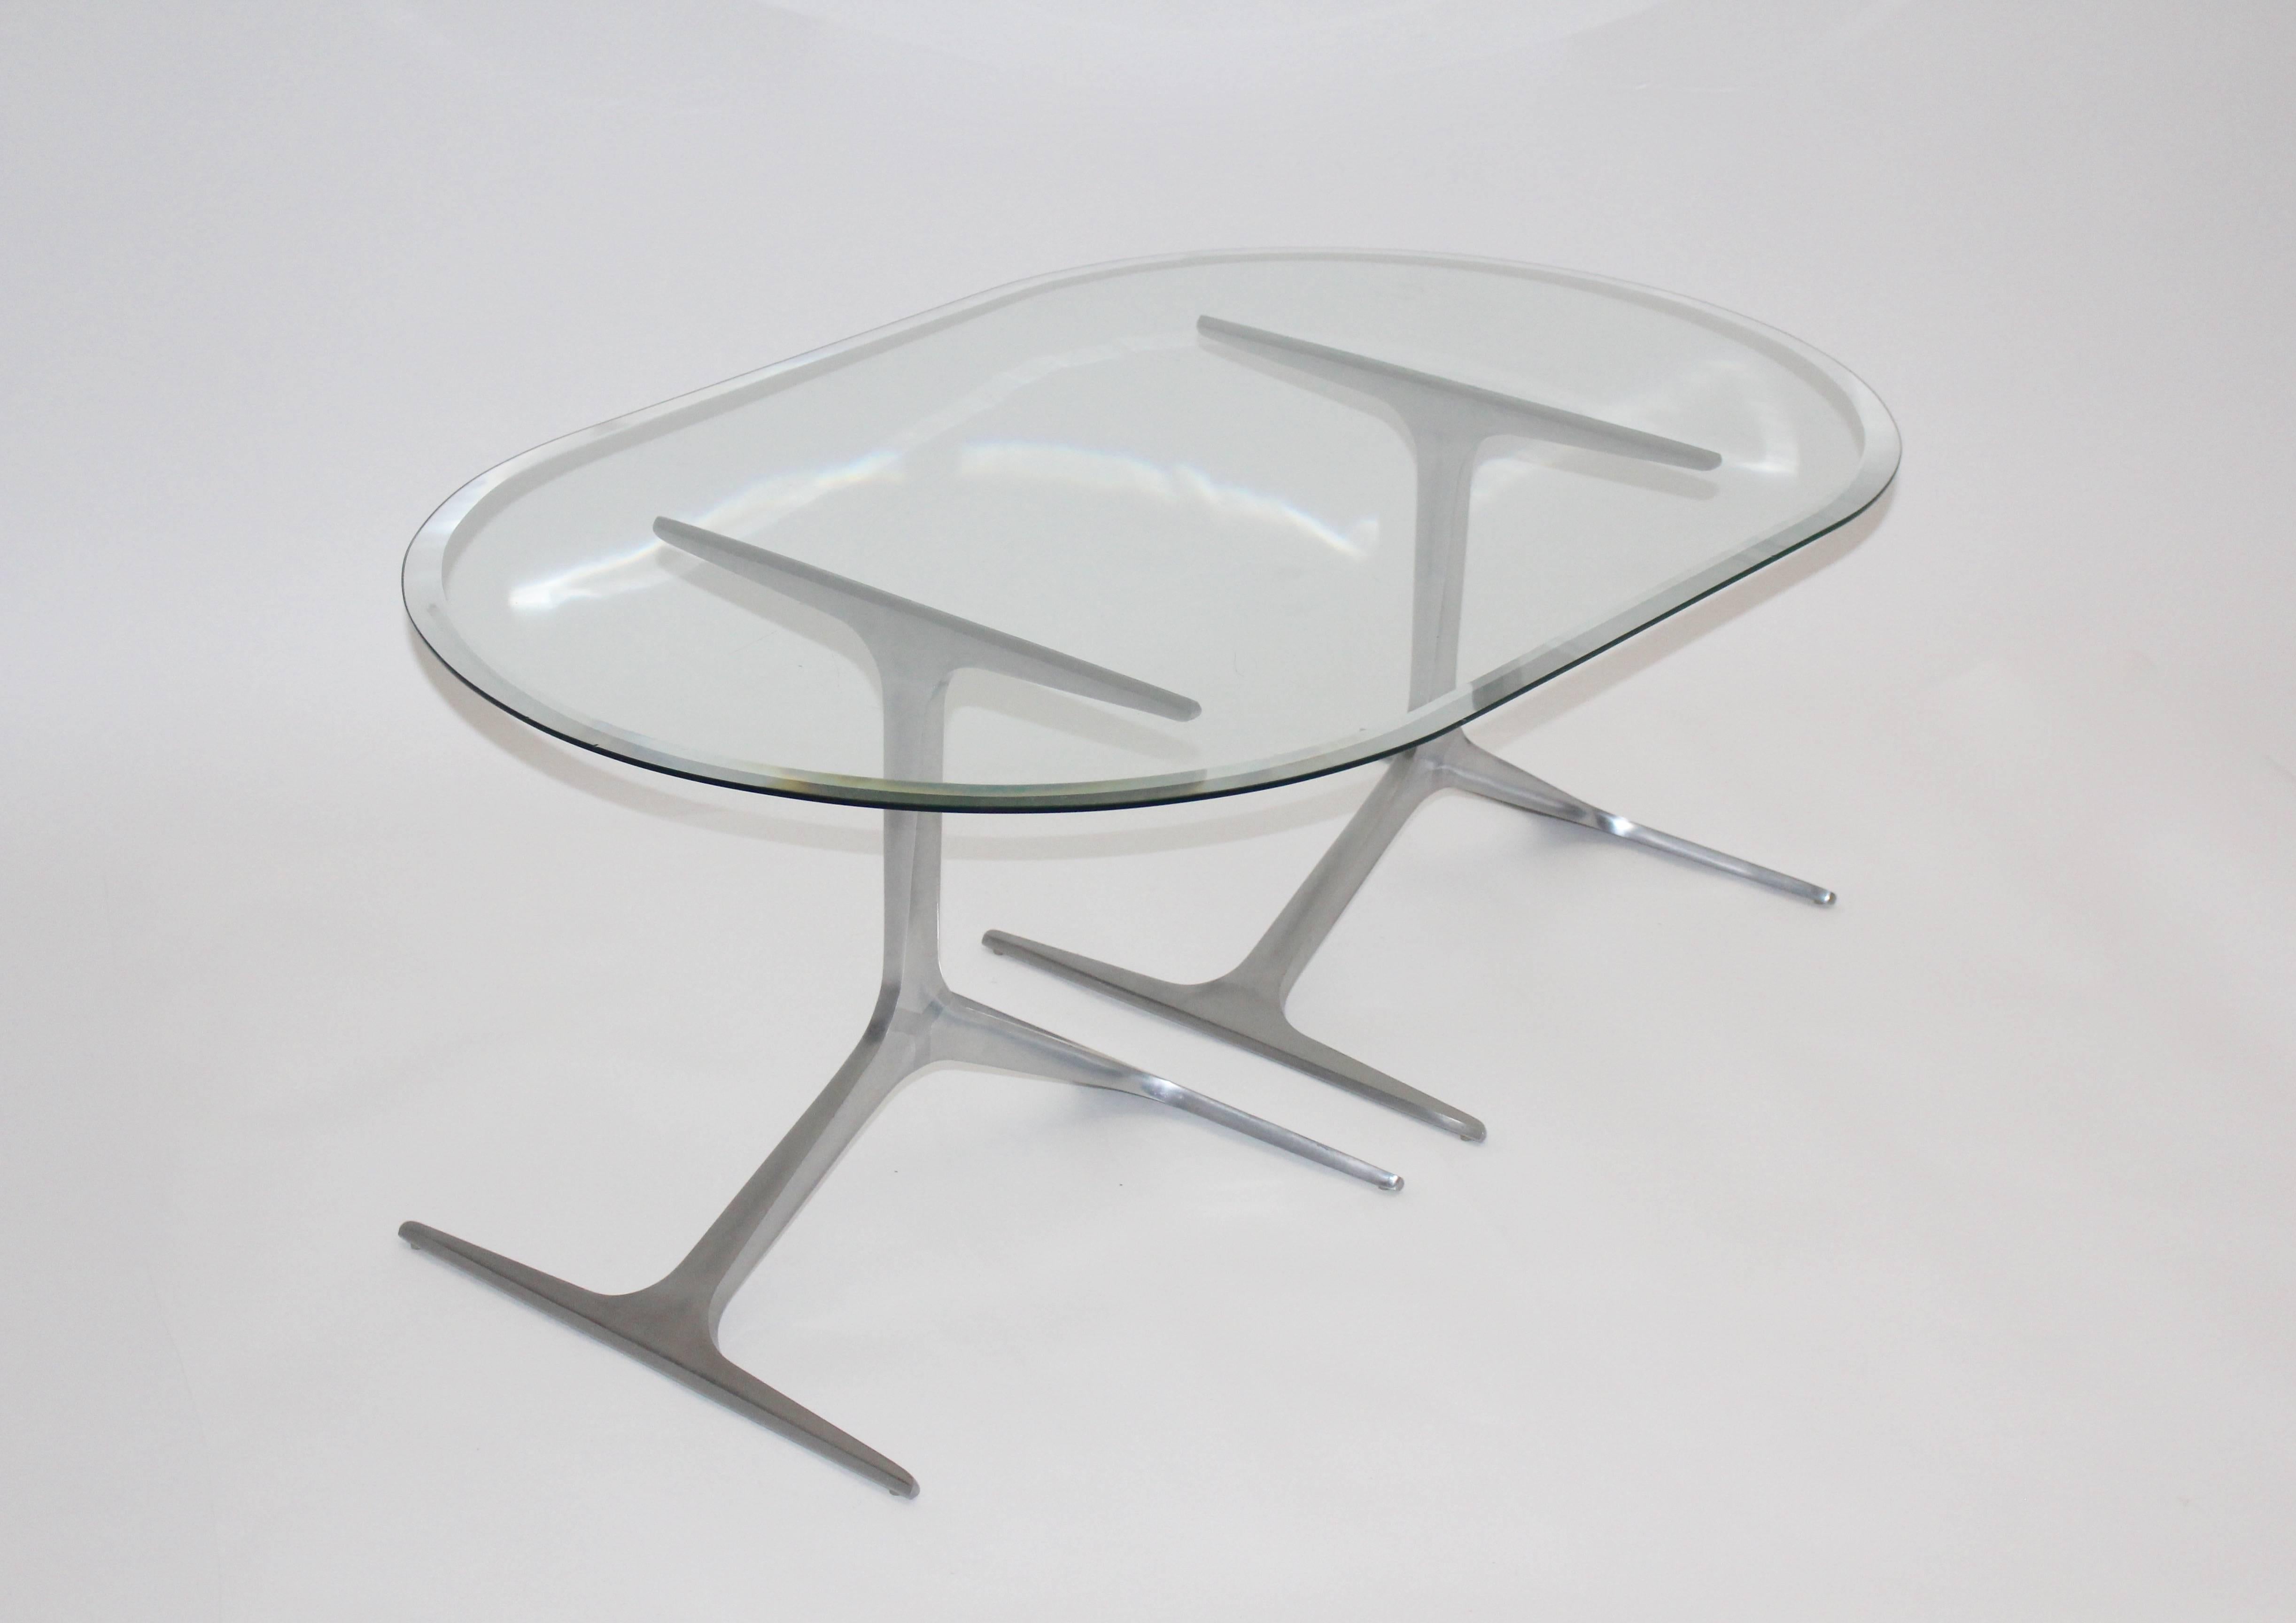 Table basse ou table de canapé sculpturale du milieu du siècle, composée de deux éléments en aluminium surmontés d'une plaque de verre clair facetté. 
La table basse moderne du milieu du siècle a été conçue par Knut Hesterberg dans les années 1960